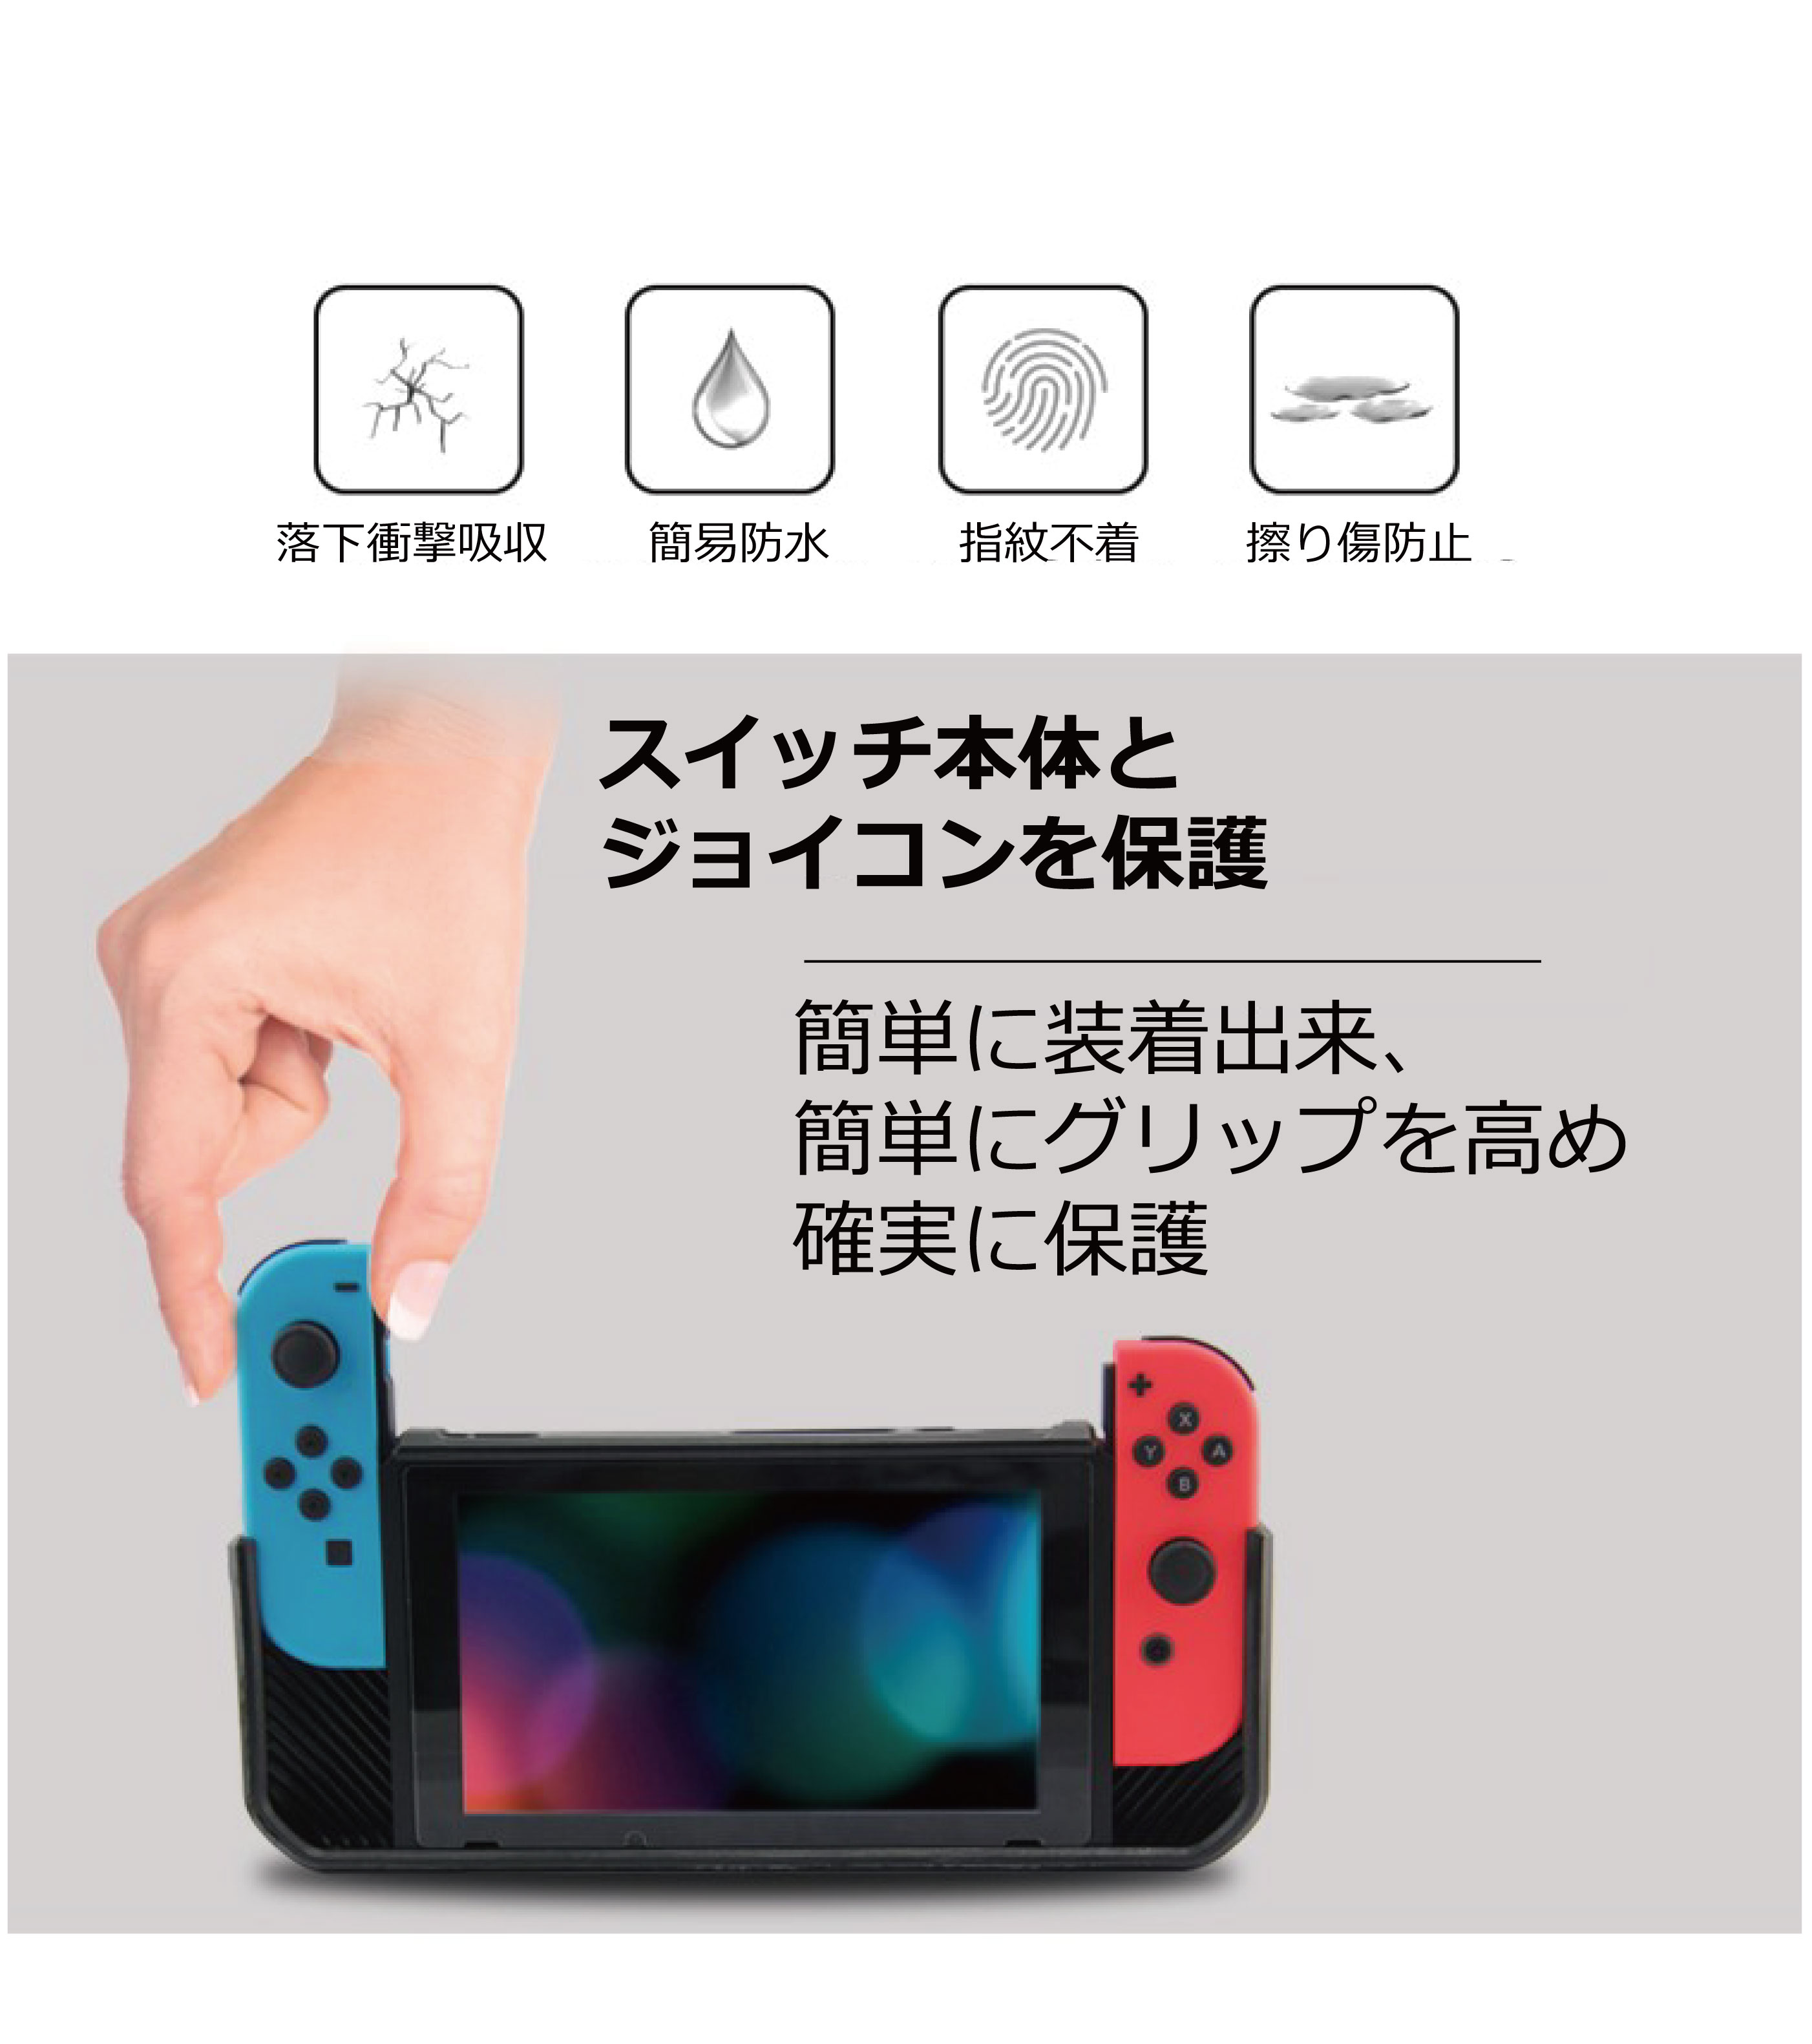 楽天市場 割引クーポン有 スイッチ ケース Nintendo Switch 任天堂 本体 を保護 耐衝撃カバー グリップ力up 携帯モード 充電しながらゲーム可能 お子様に スタート